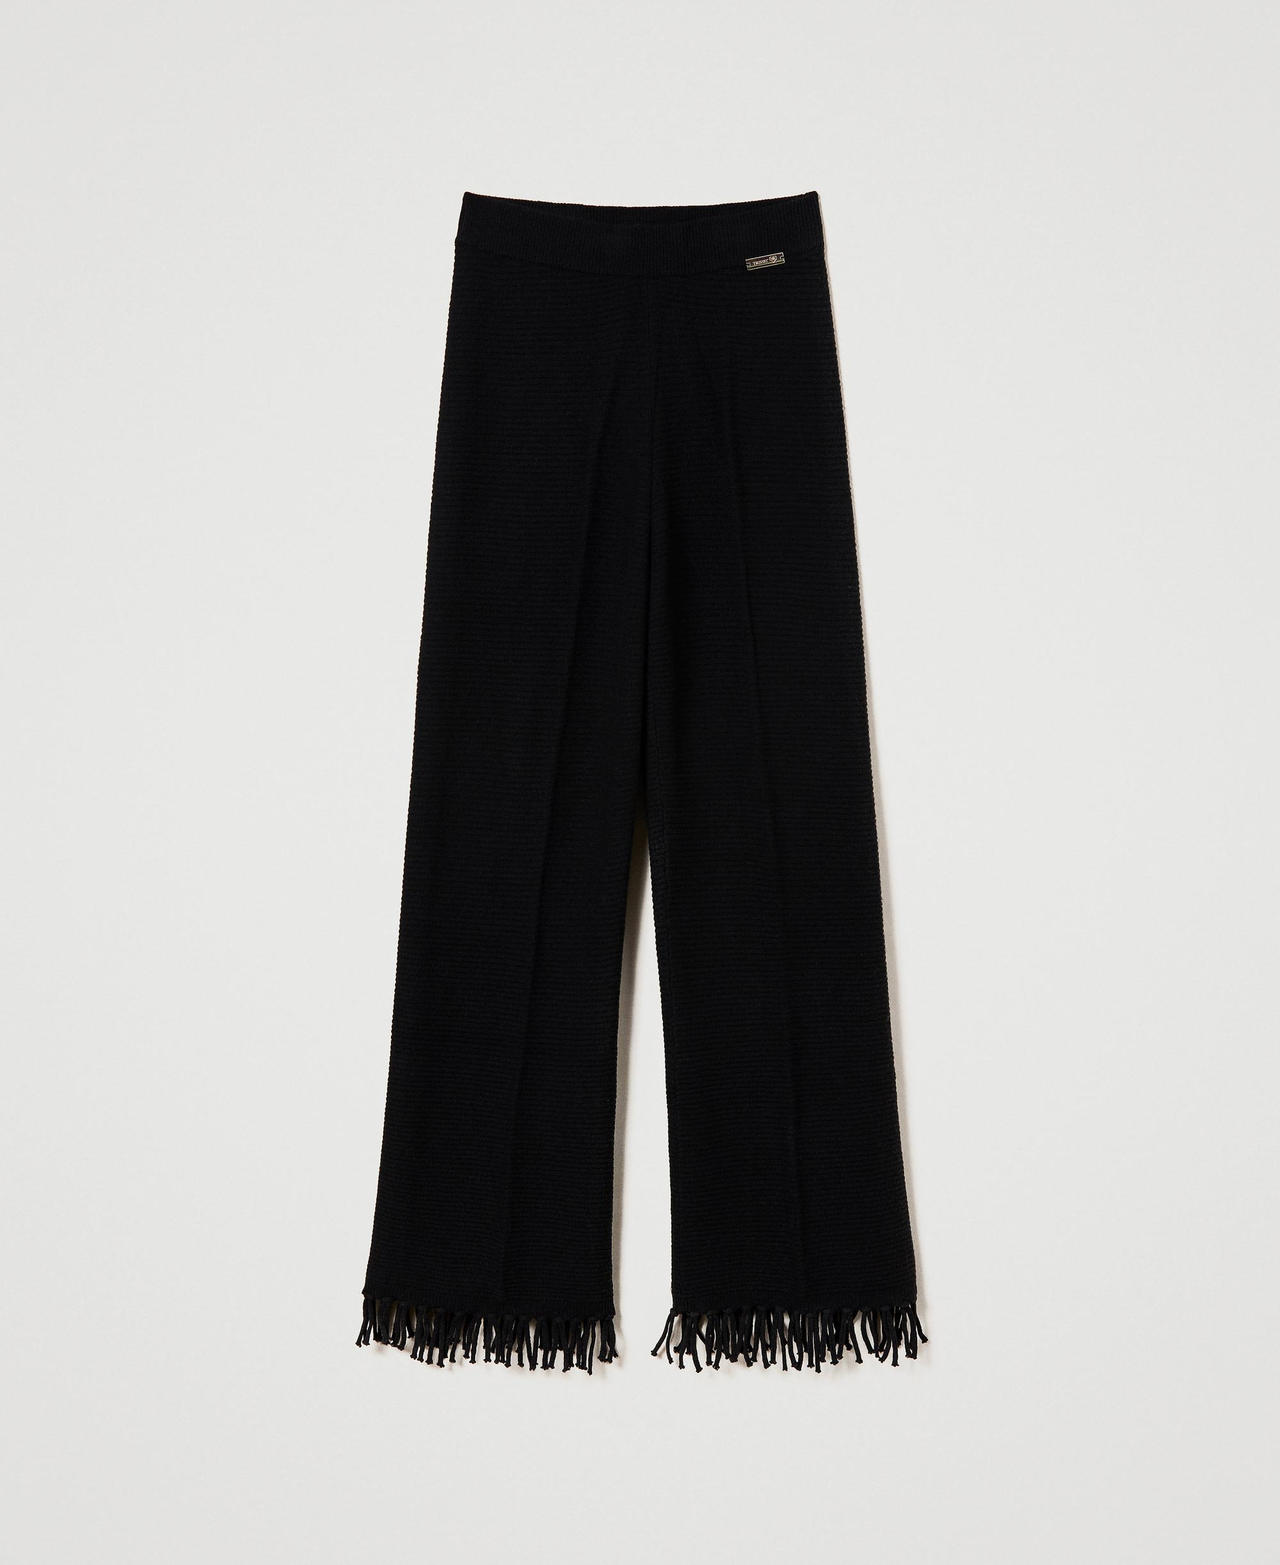 Pantaloni in lana con frange Madreperla Donna 232LL3ECC-0S